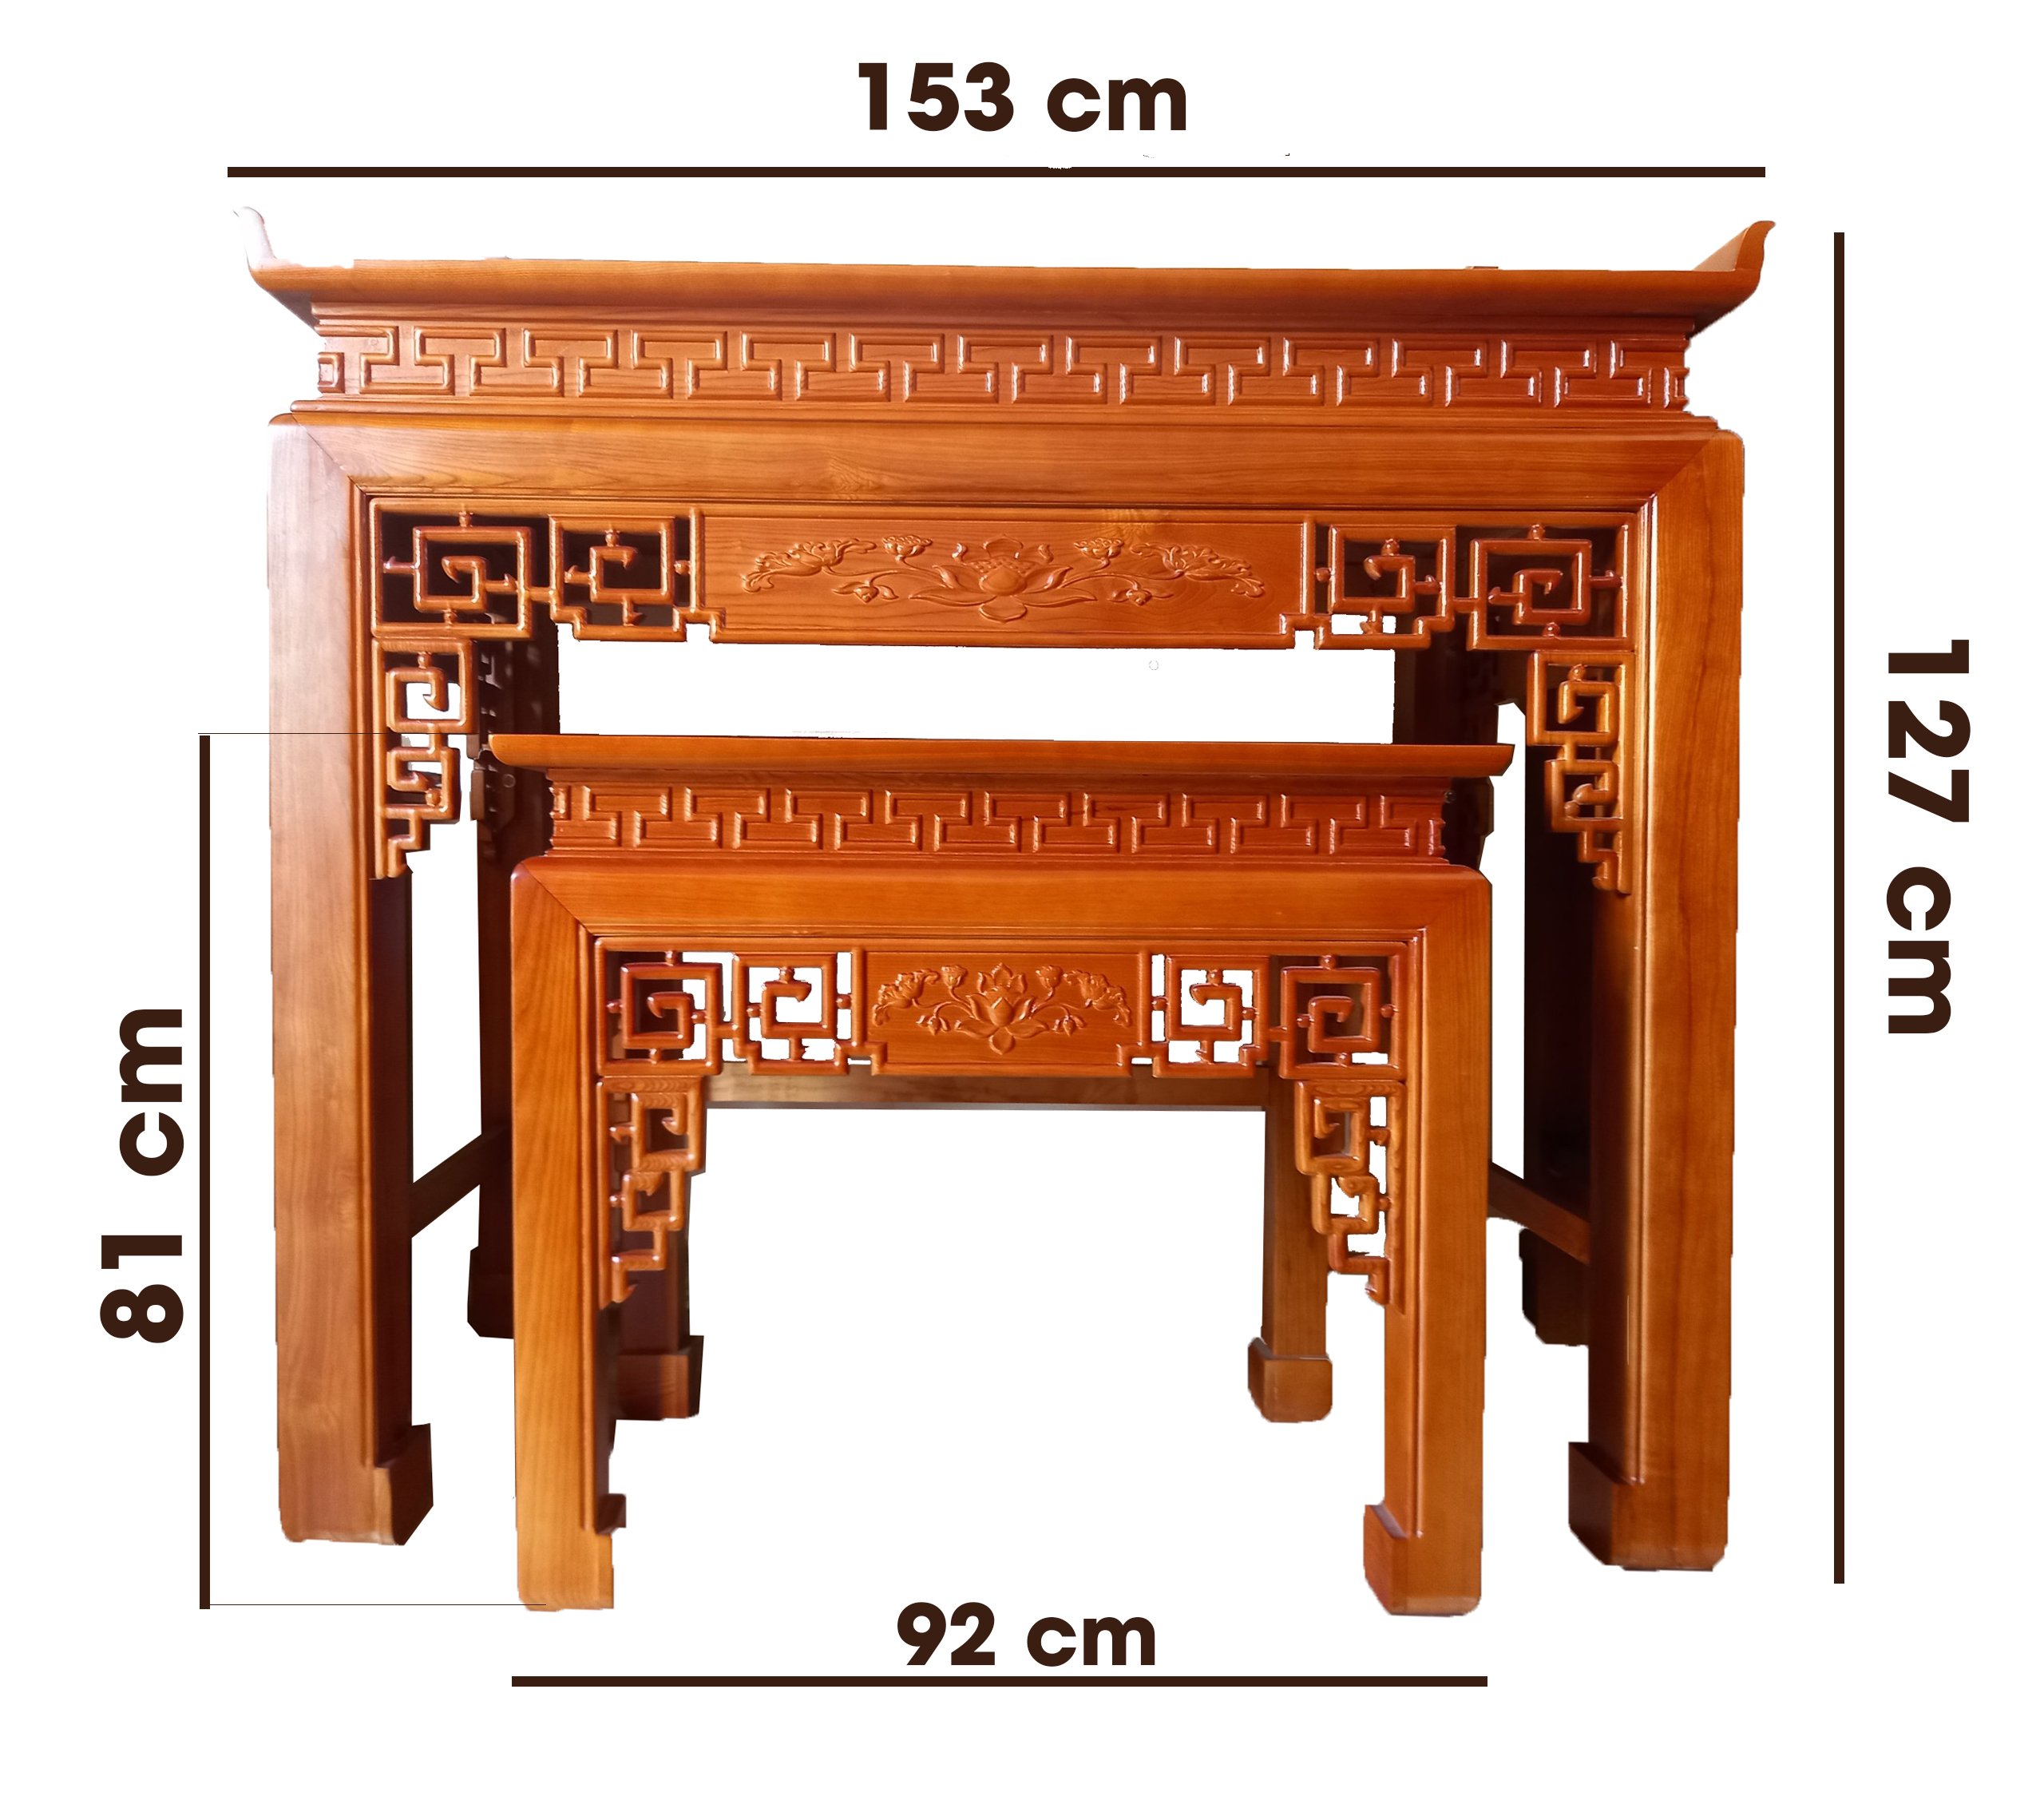 Mẫu bàn thờ đẹp gỗ gõ đỏ BTD-368 thiết kế hiện đại, đơn giản, giá rẻ nhất